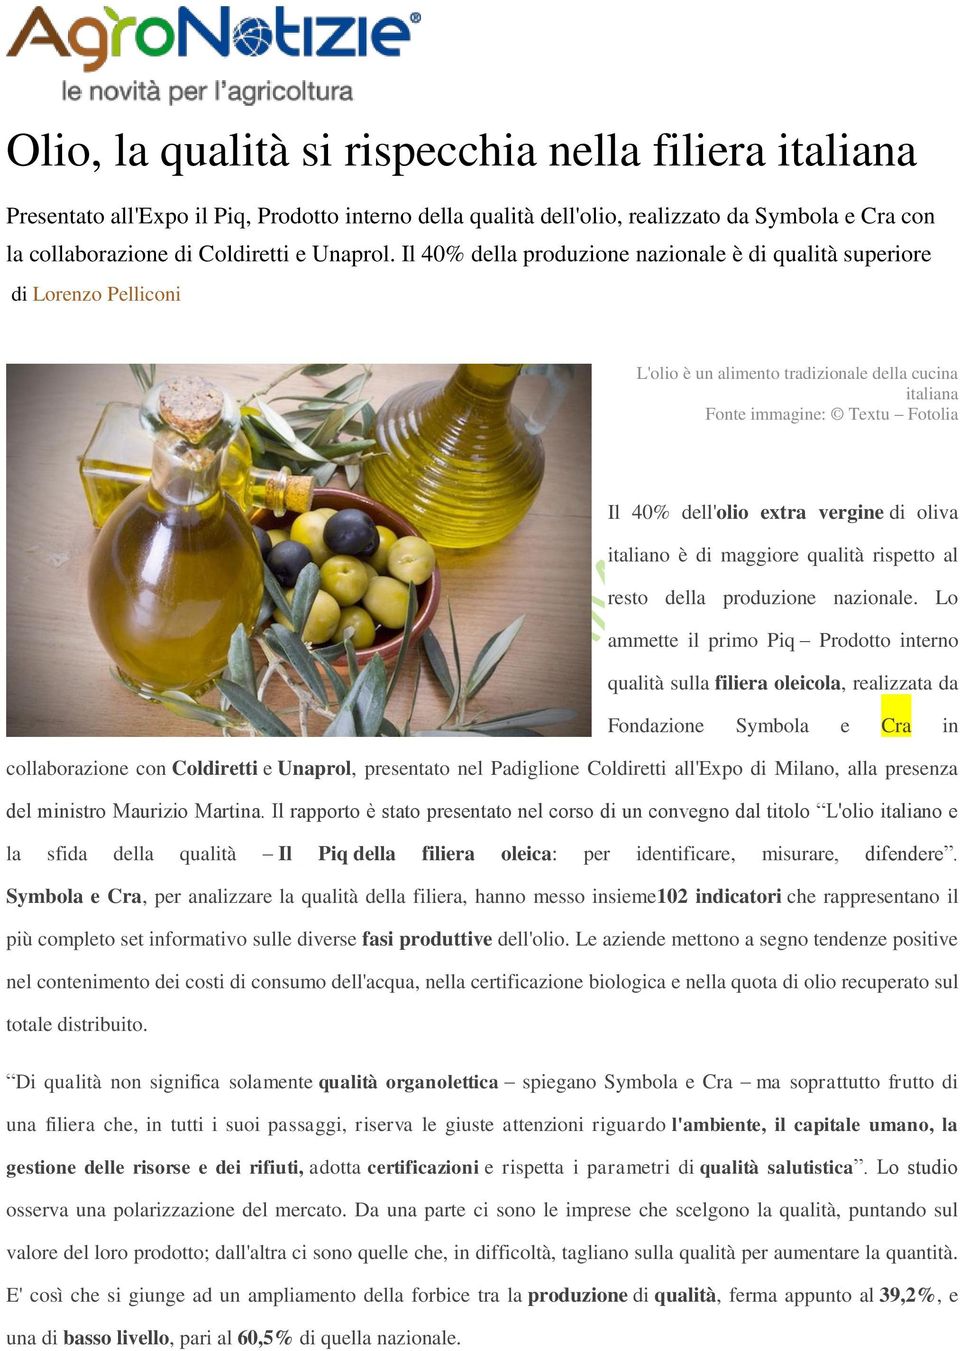 oliva italiano è di maggiore qualità rispetto al resto della produzione nazionale.